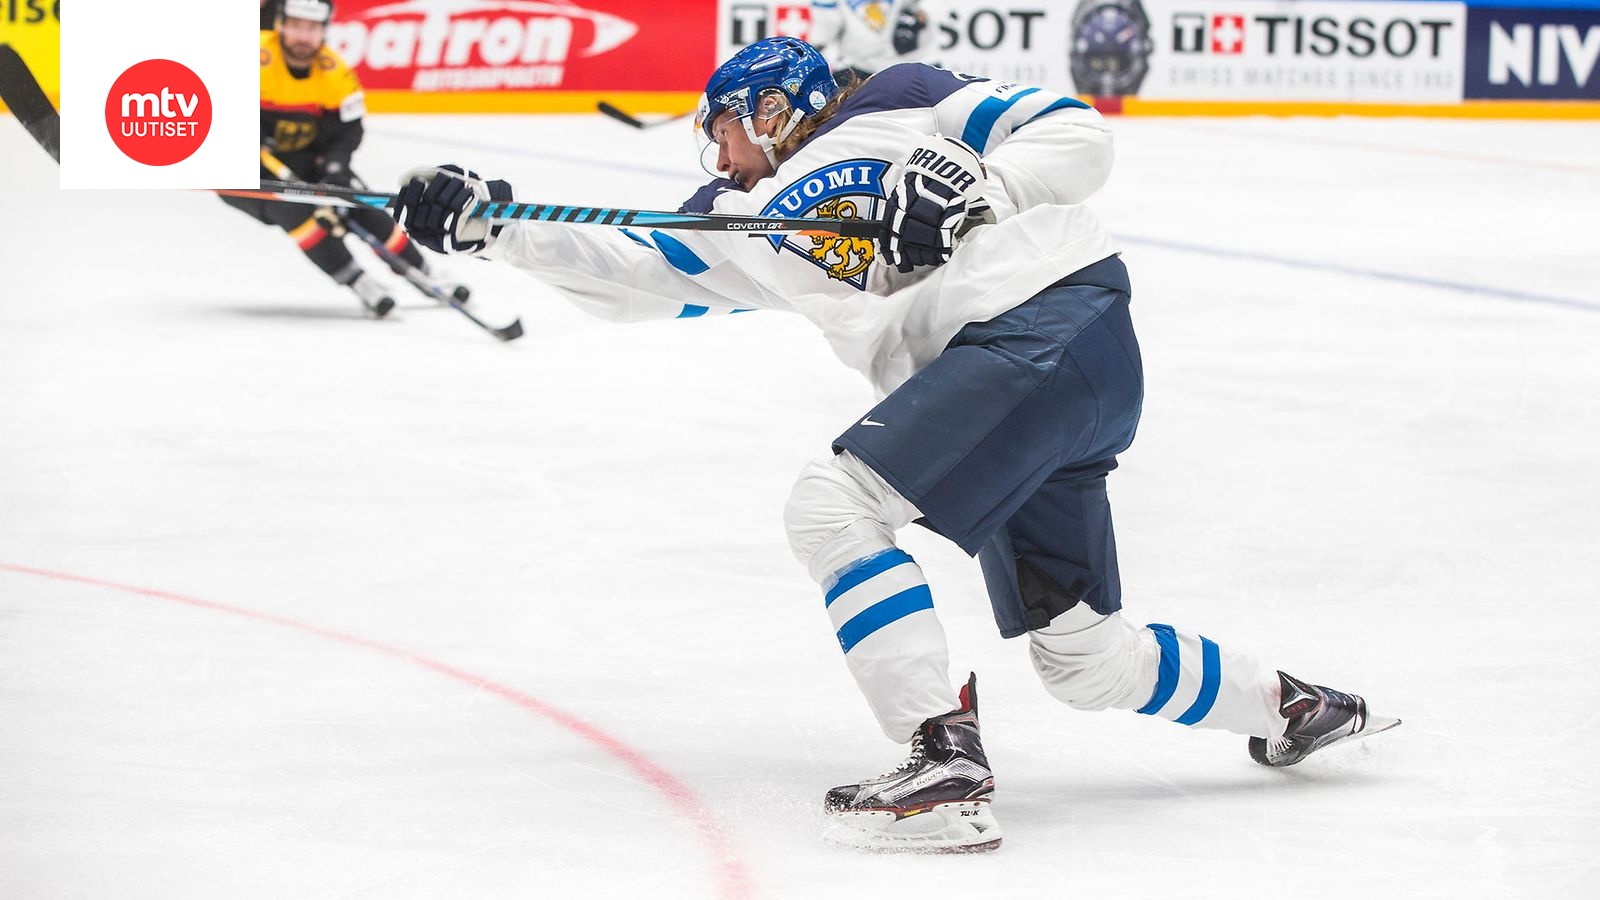 Urheilutoimittajien valinta: Patrik Laine on Suomen paras jääkiekkoilija -  